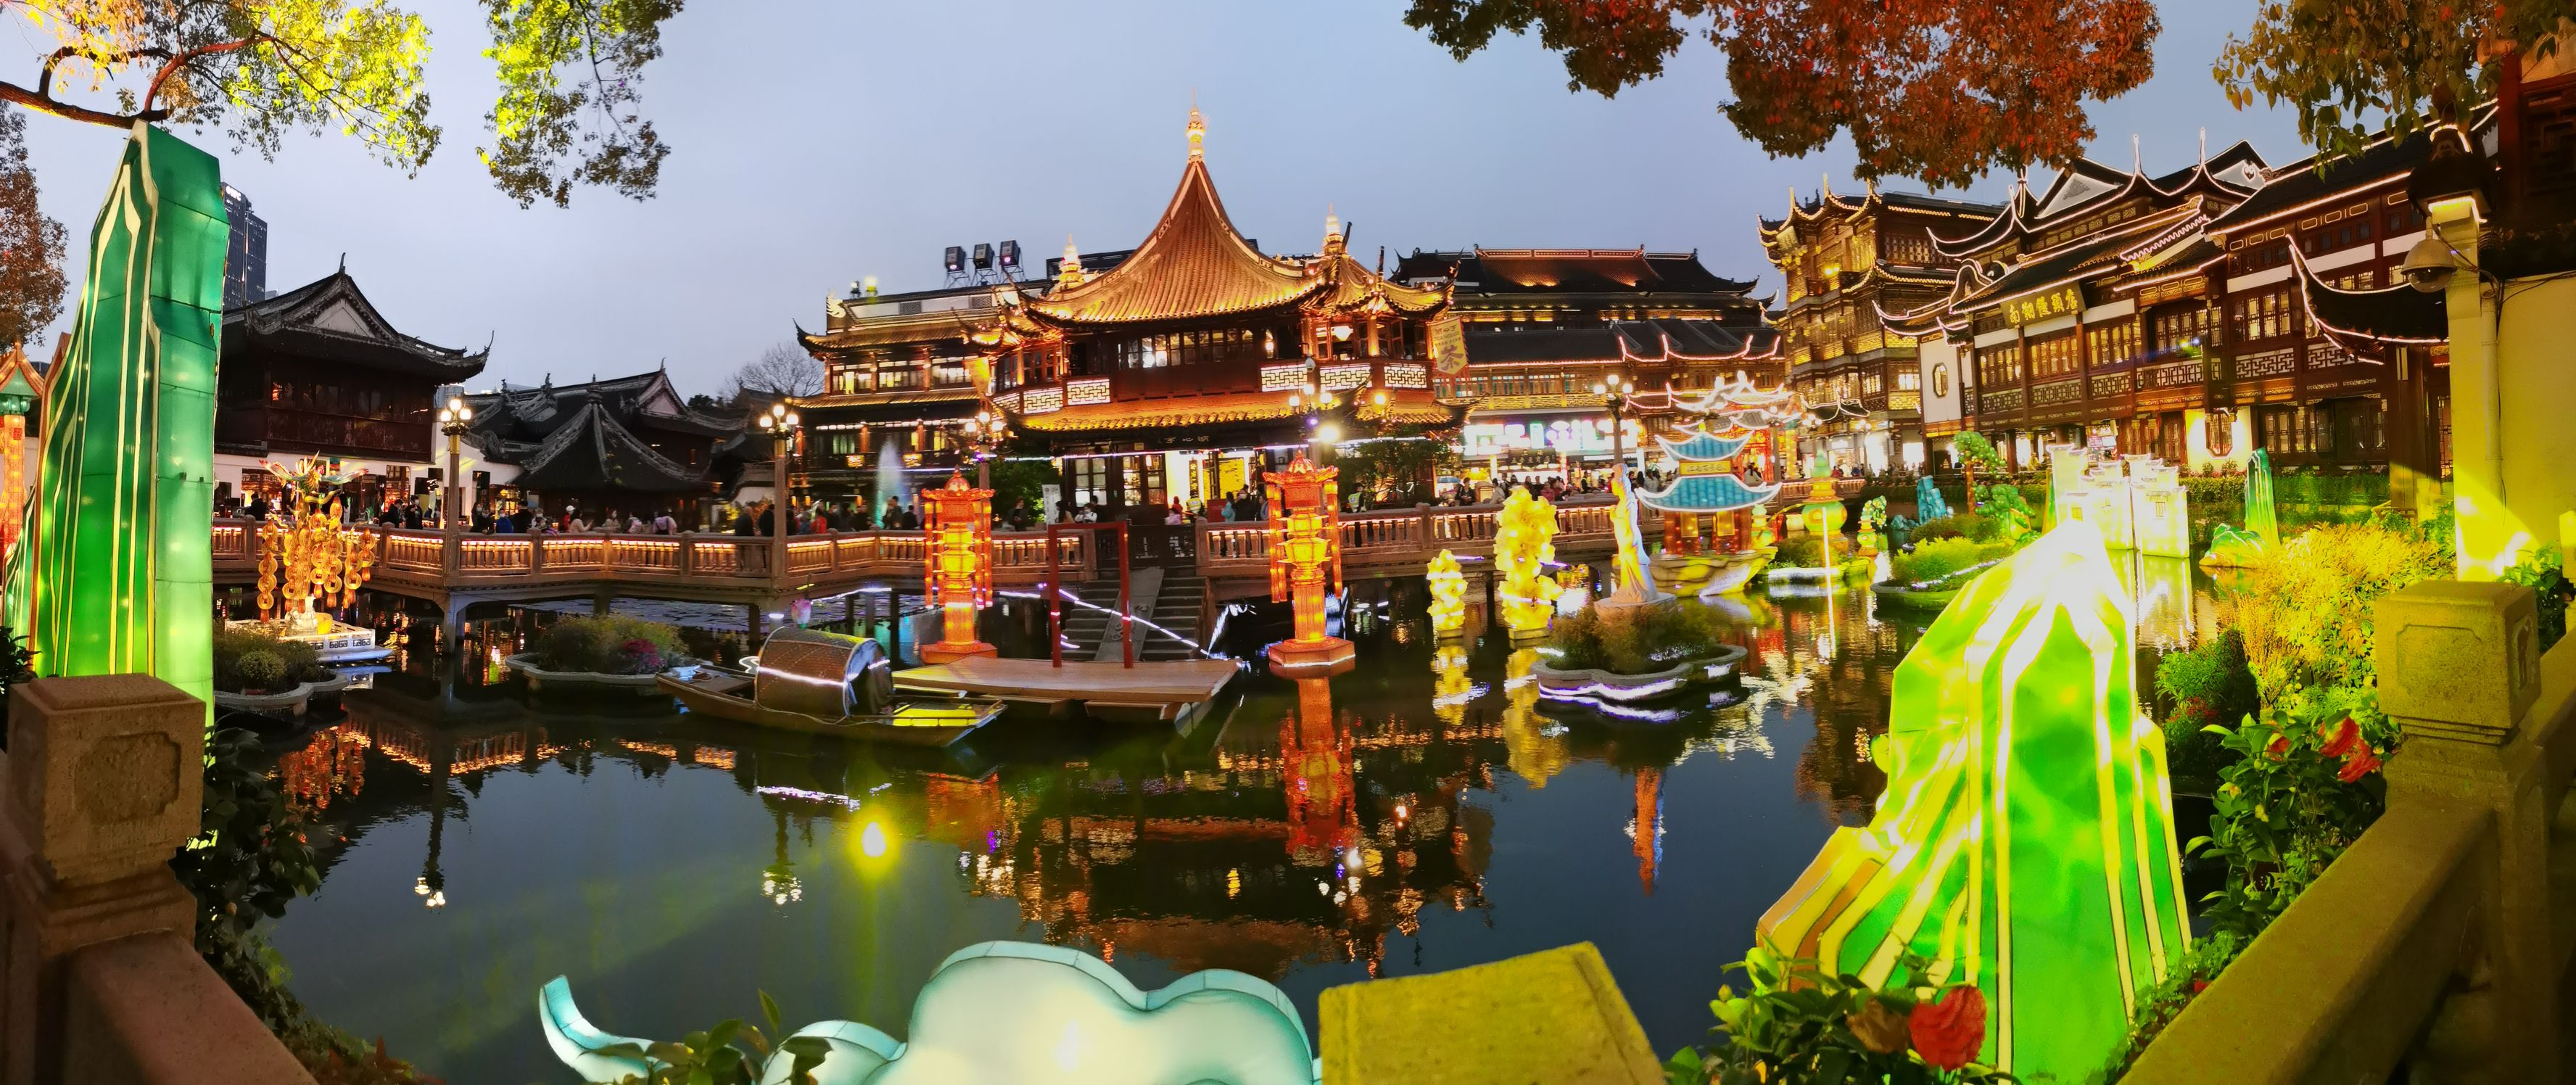 【携程攻略】上海豫园适合朋友出游旅游吗,豫园朋友出游景点推荐/点评